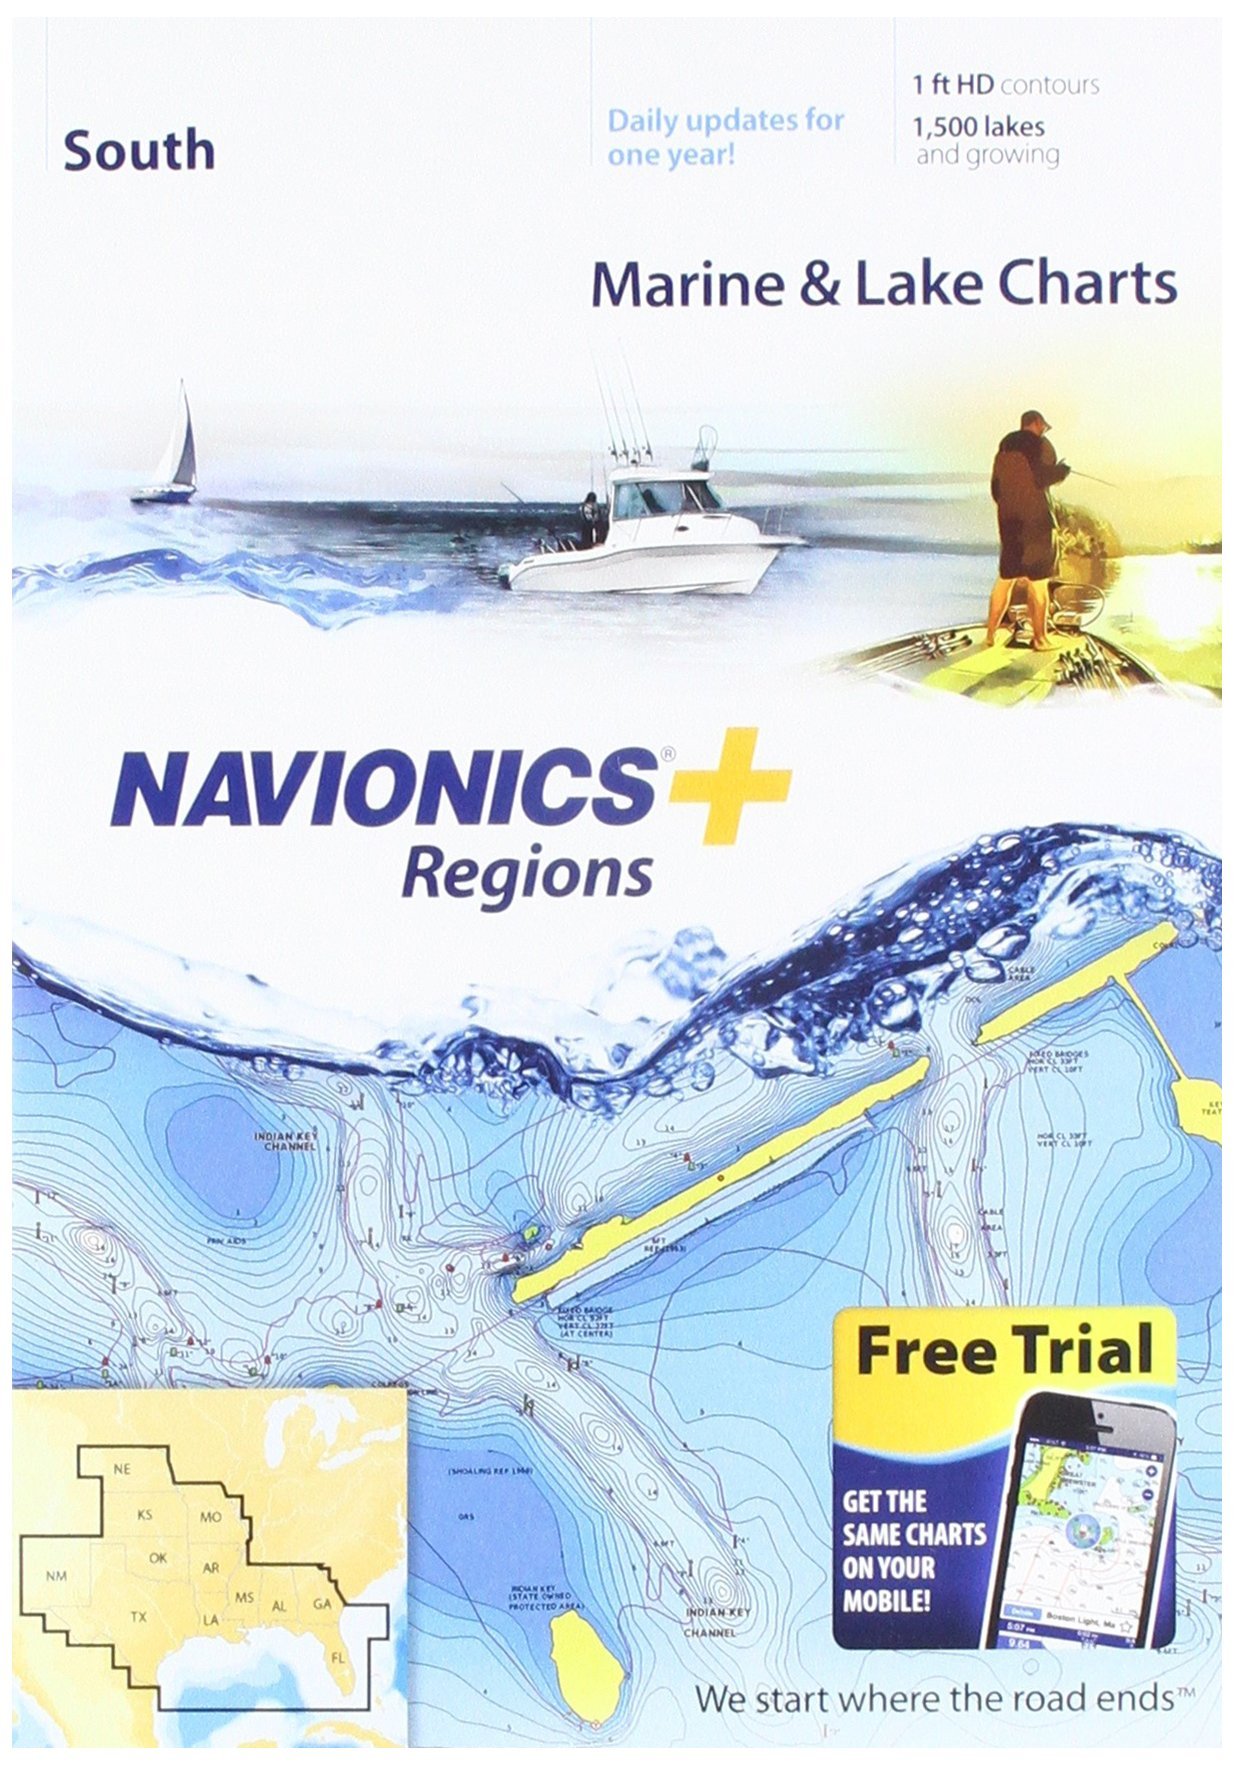 Navionics بالإضافة إلى المخططات البحرية والبحيرة الجنوبية للمناطق على SD / MSD